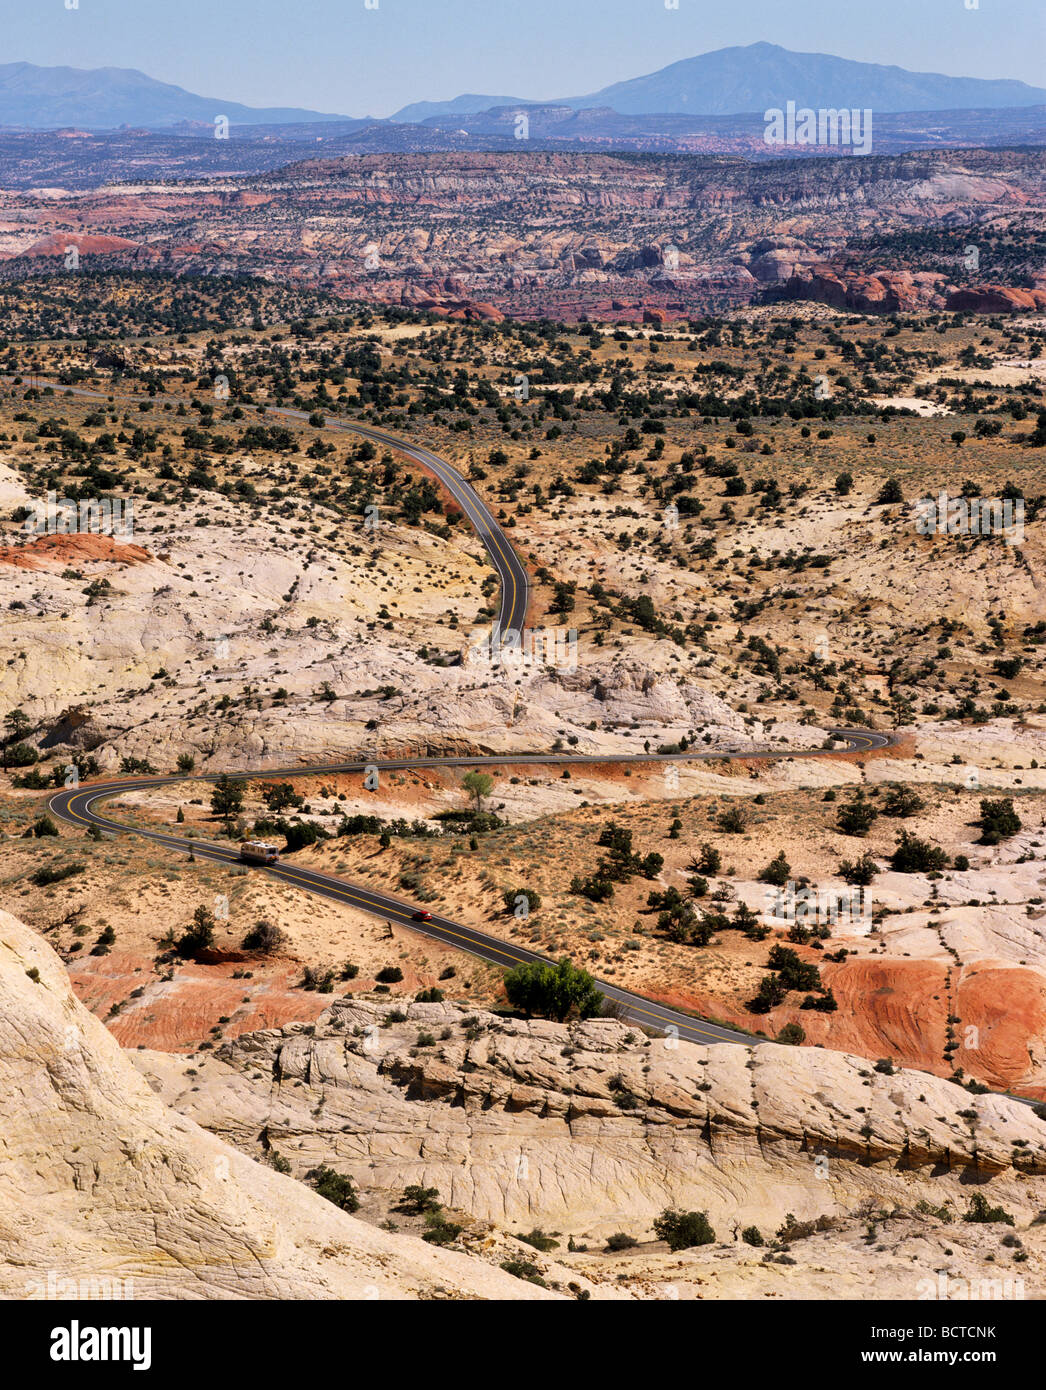 Parco Nazionale di Zion, autostrada, Vista panoramica, Utah, Stati Uniti d'America Foto Stock